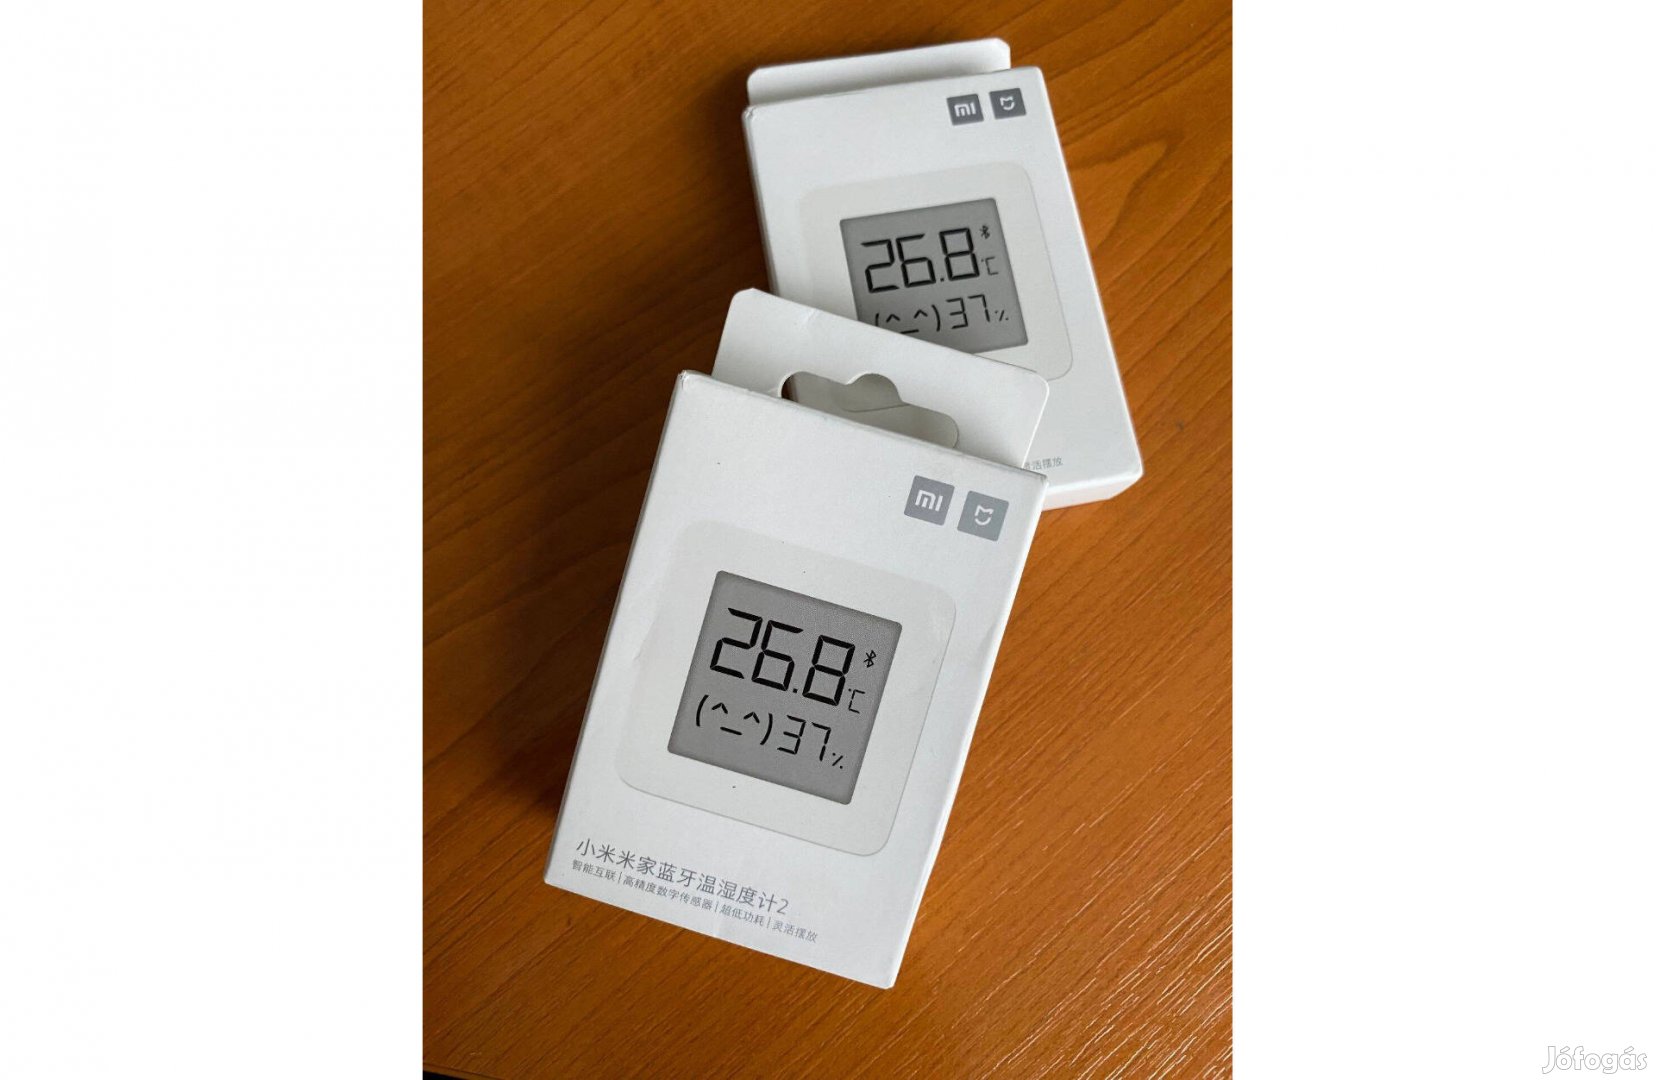 Xiaomi Mi Home okos szobahőmérséklet és páratartalom mérő